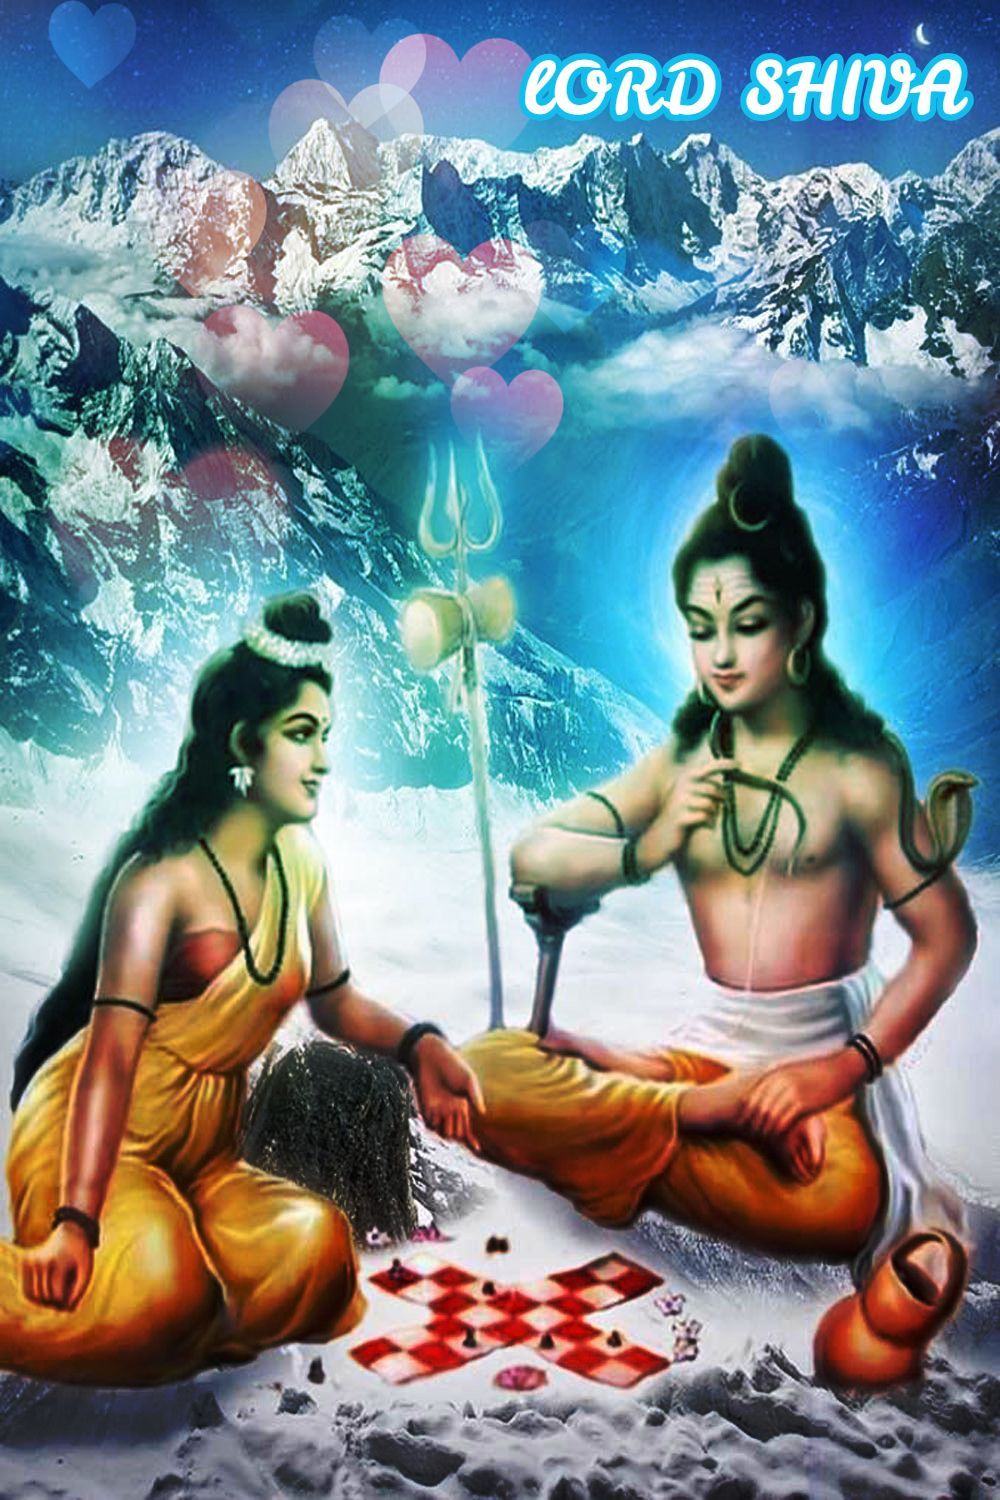 Shiva beautiful song. siva. lord shiva. siva image. siva